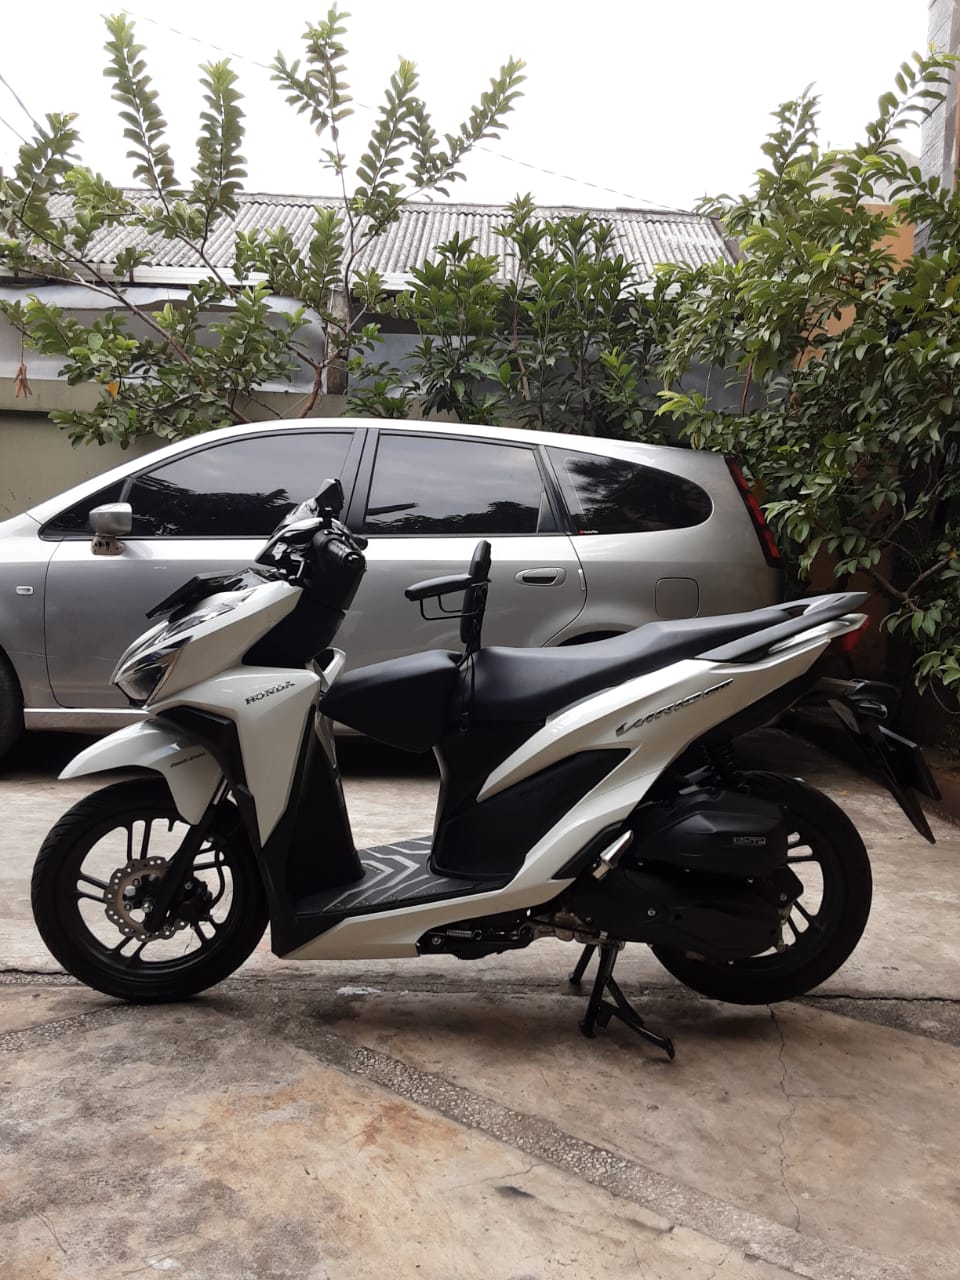 Boncengan Motor Anak Vario 150 Harga Termurah Gemilang Jok Bisa Cod Lazada Indonesia